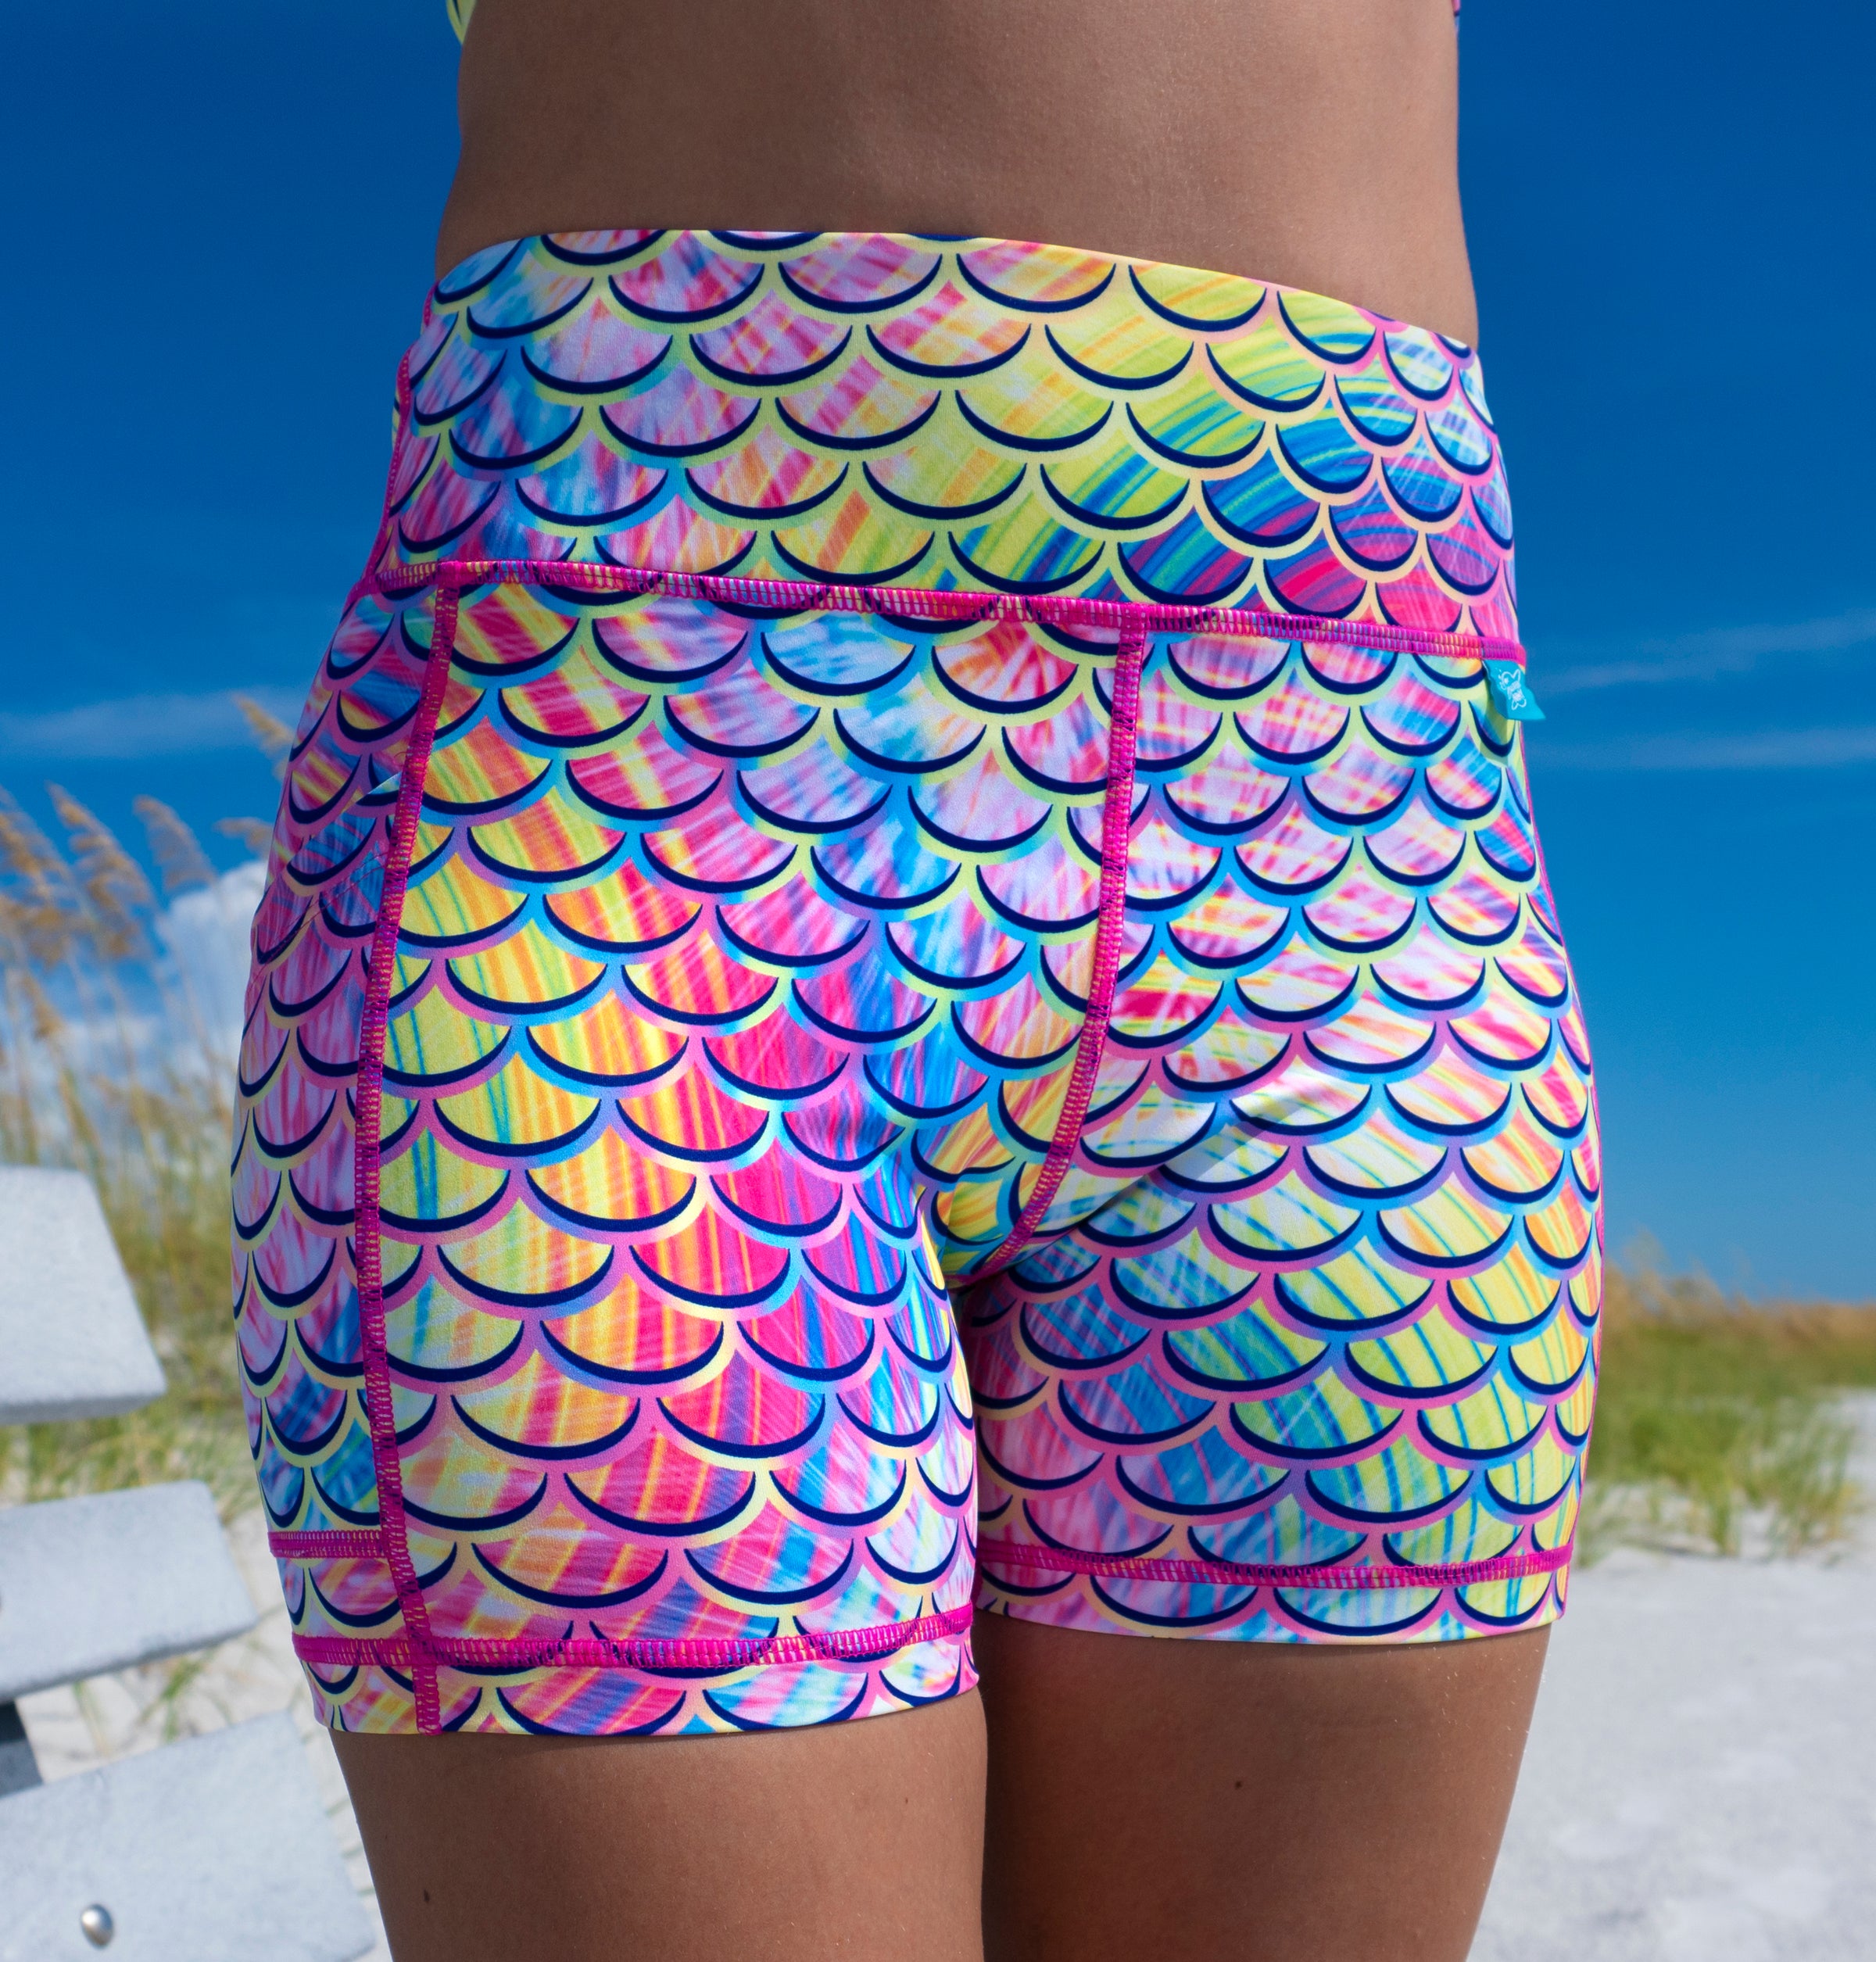 mermaid shorts